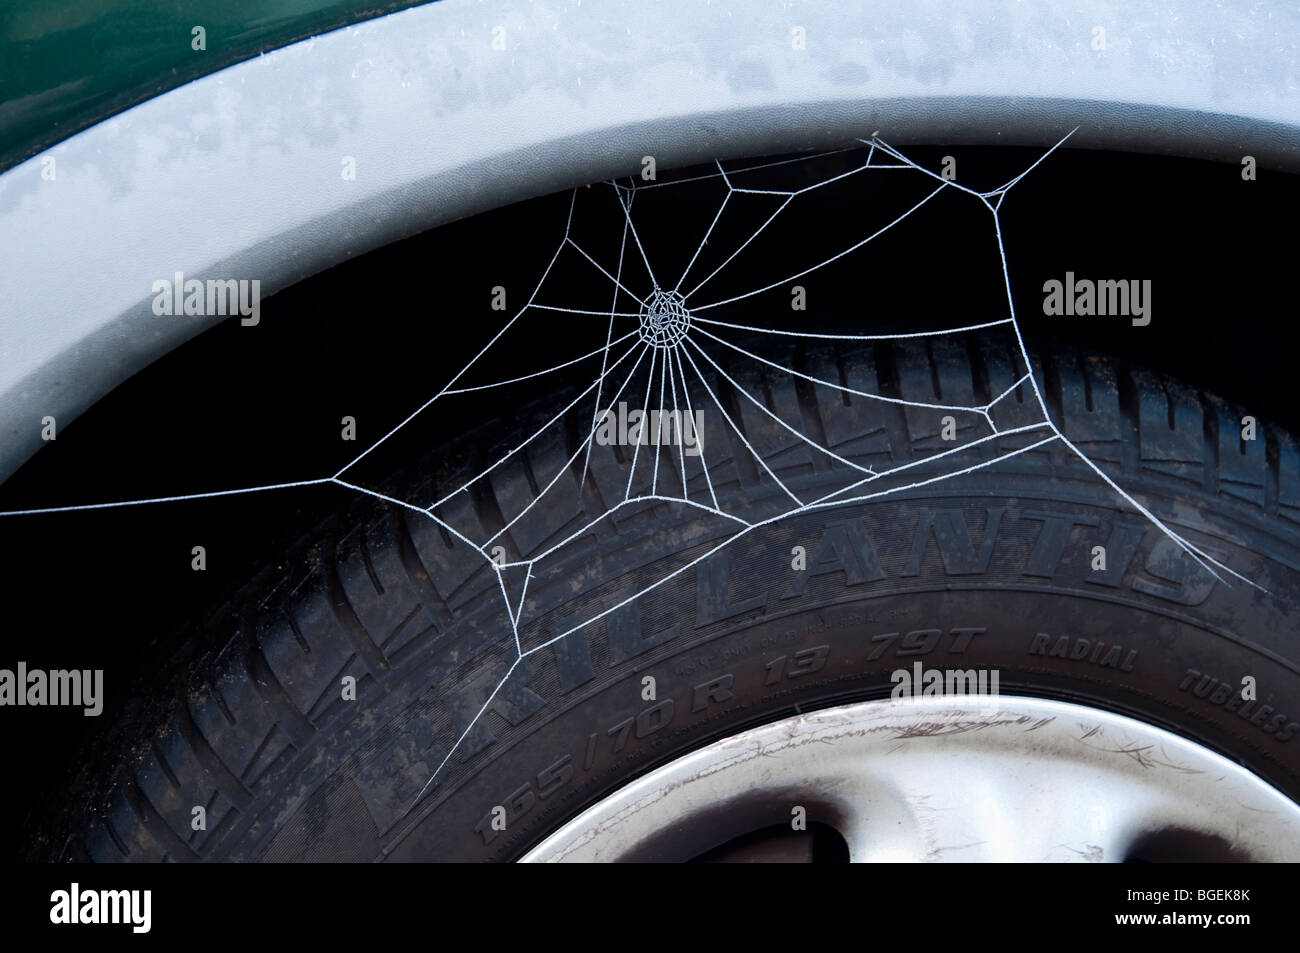 Spiders Web, couverte de givre, sur un passage de roue de voiture - plus de chances d'être un foyer temporaire. Banque D'Images